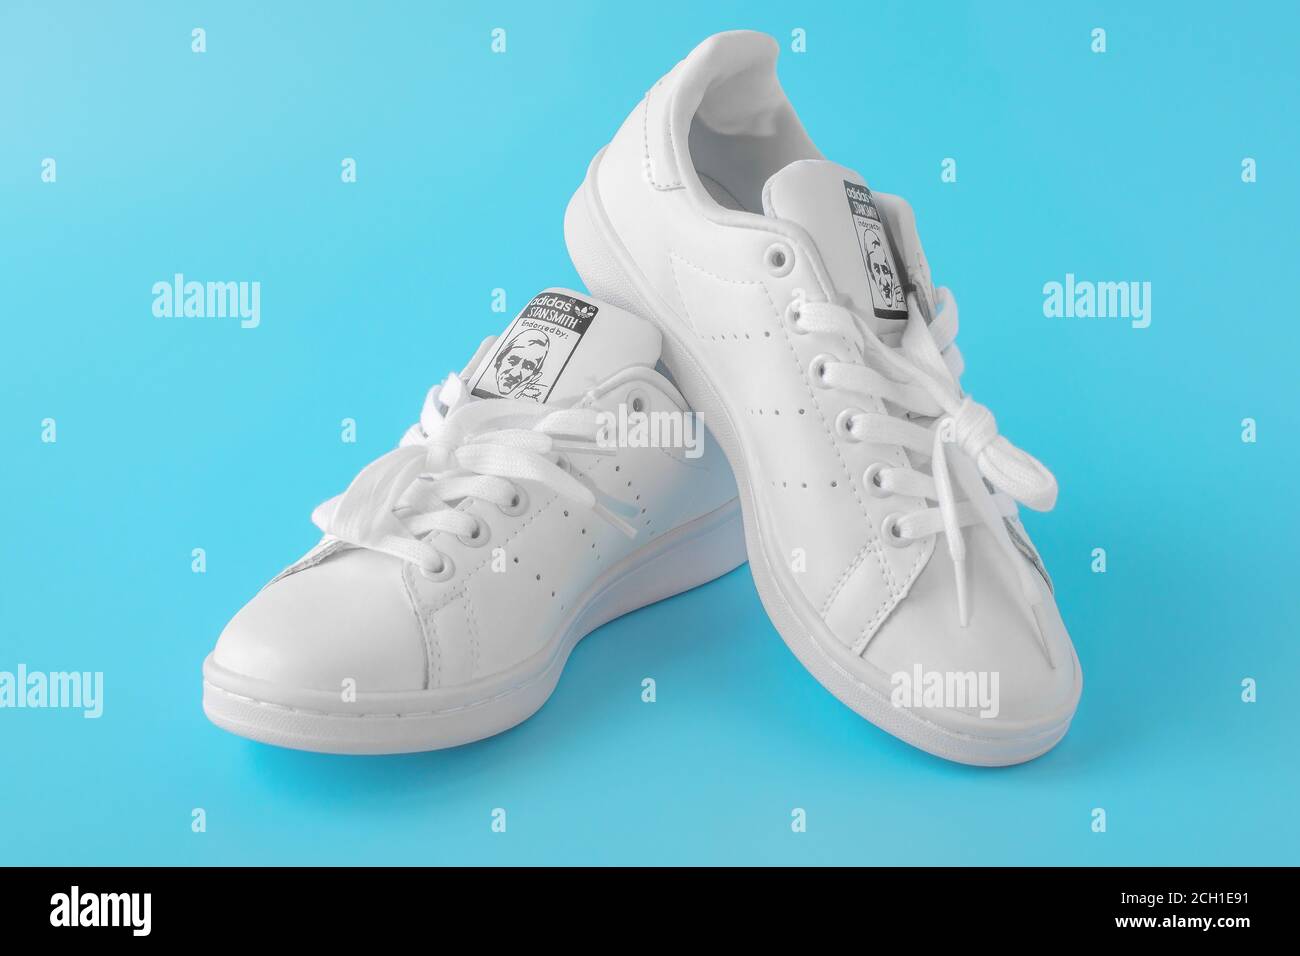 Moscou, Russie - 30 JUILLET 2020: Chaussures blanches Adidas Stan Smith,  photo de nouvelles baskets blanches sur fond bleu. Adidas est une société  internationale Photo Stock - Alamy